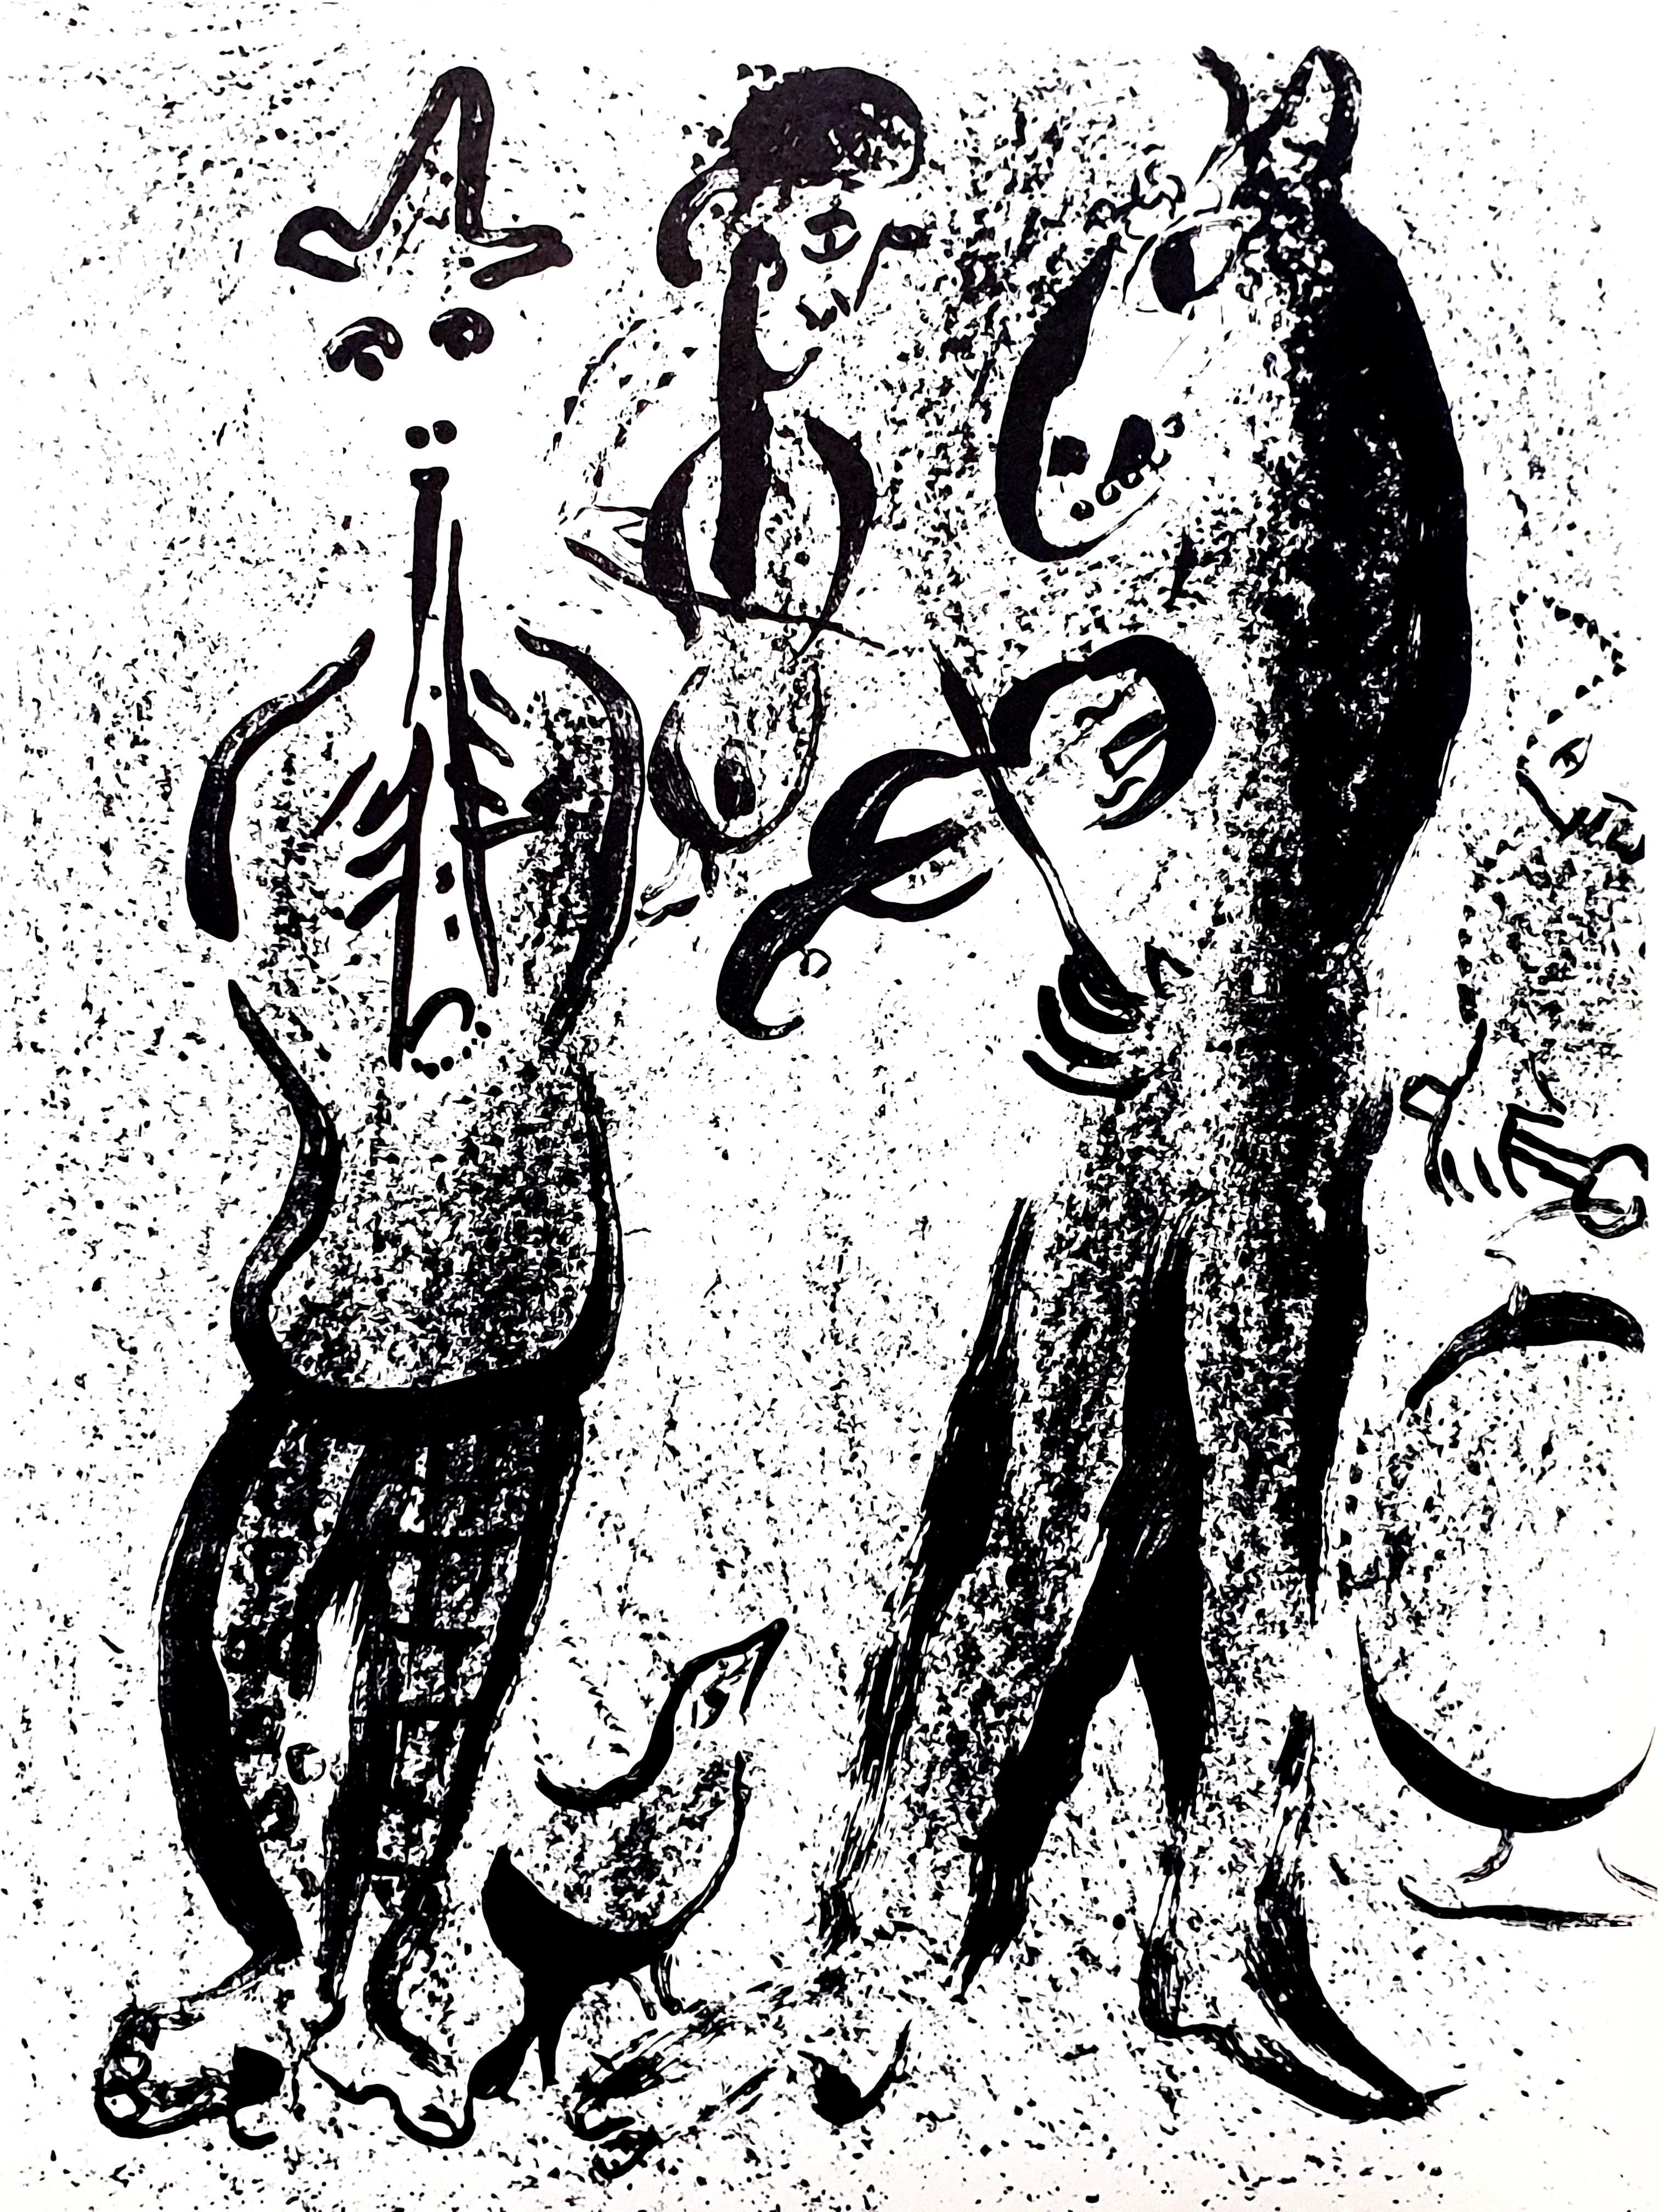 Marc Chagall
Lithographie originale
1963
Dimensions : 32 x 24 cm
Référence : Chagall Lithographe 1957-1962. VOLUME II.
Édition non signée de plus de 5 000 exemplaires
Condition : Excellent

Marc Chagall  (né en 1887)

Marc Chagall est né en